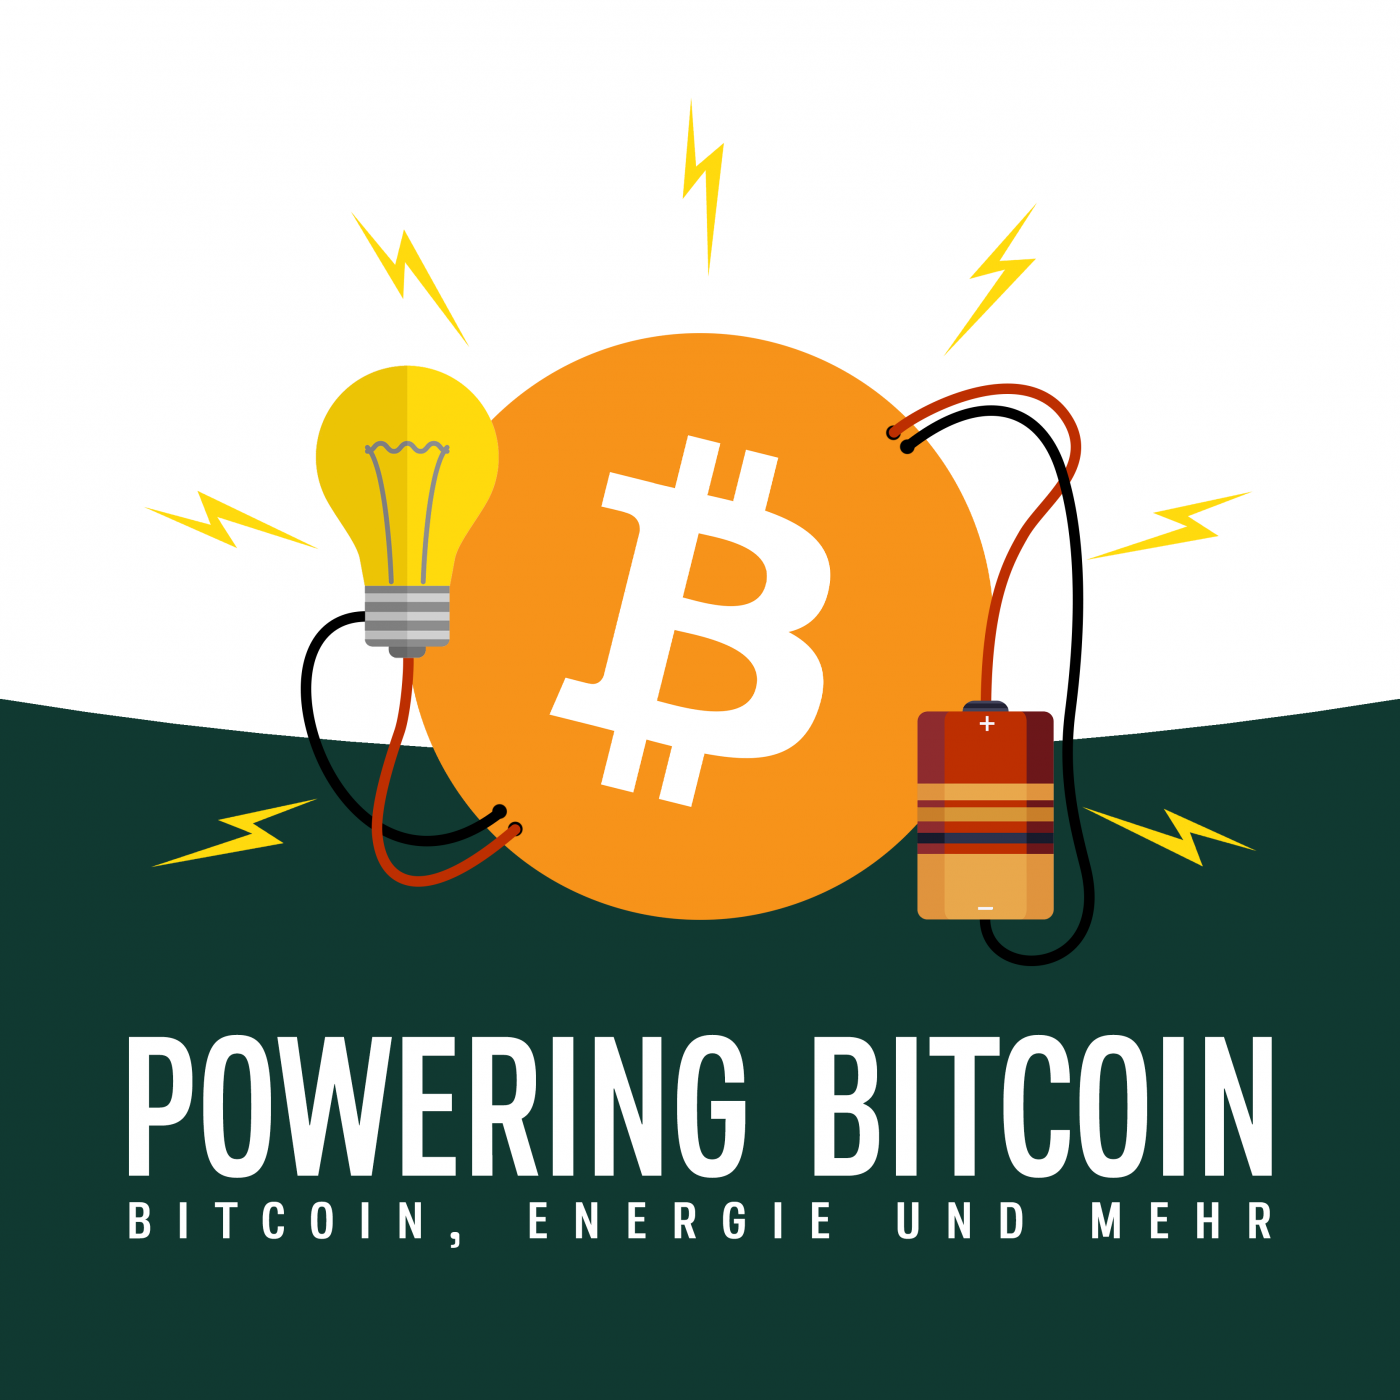 Powering Bitcoin - Bitcoin & Energy